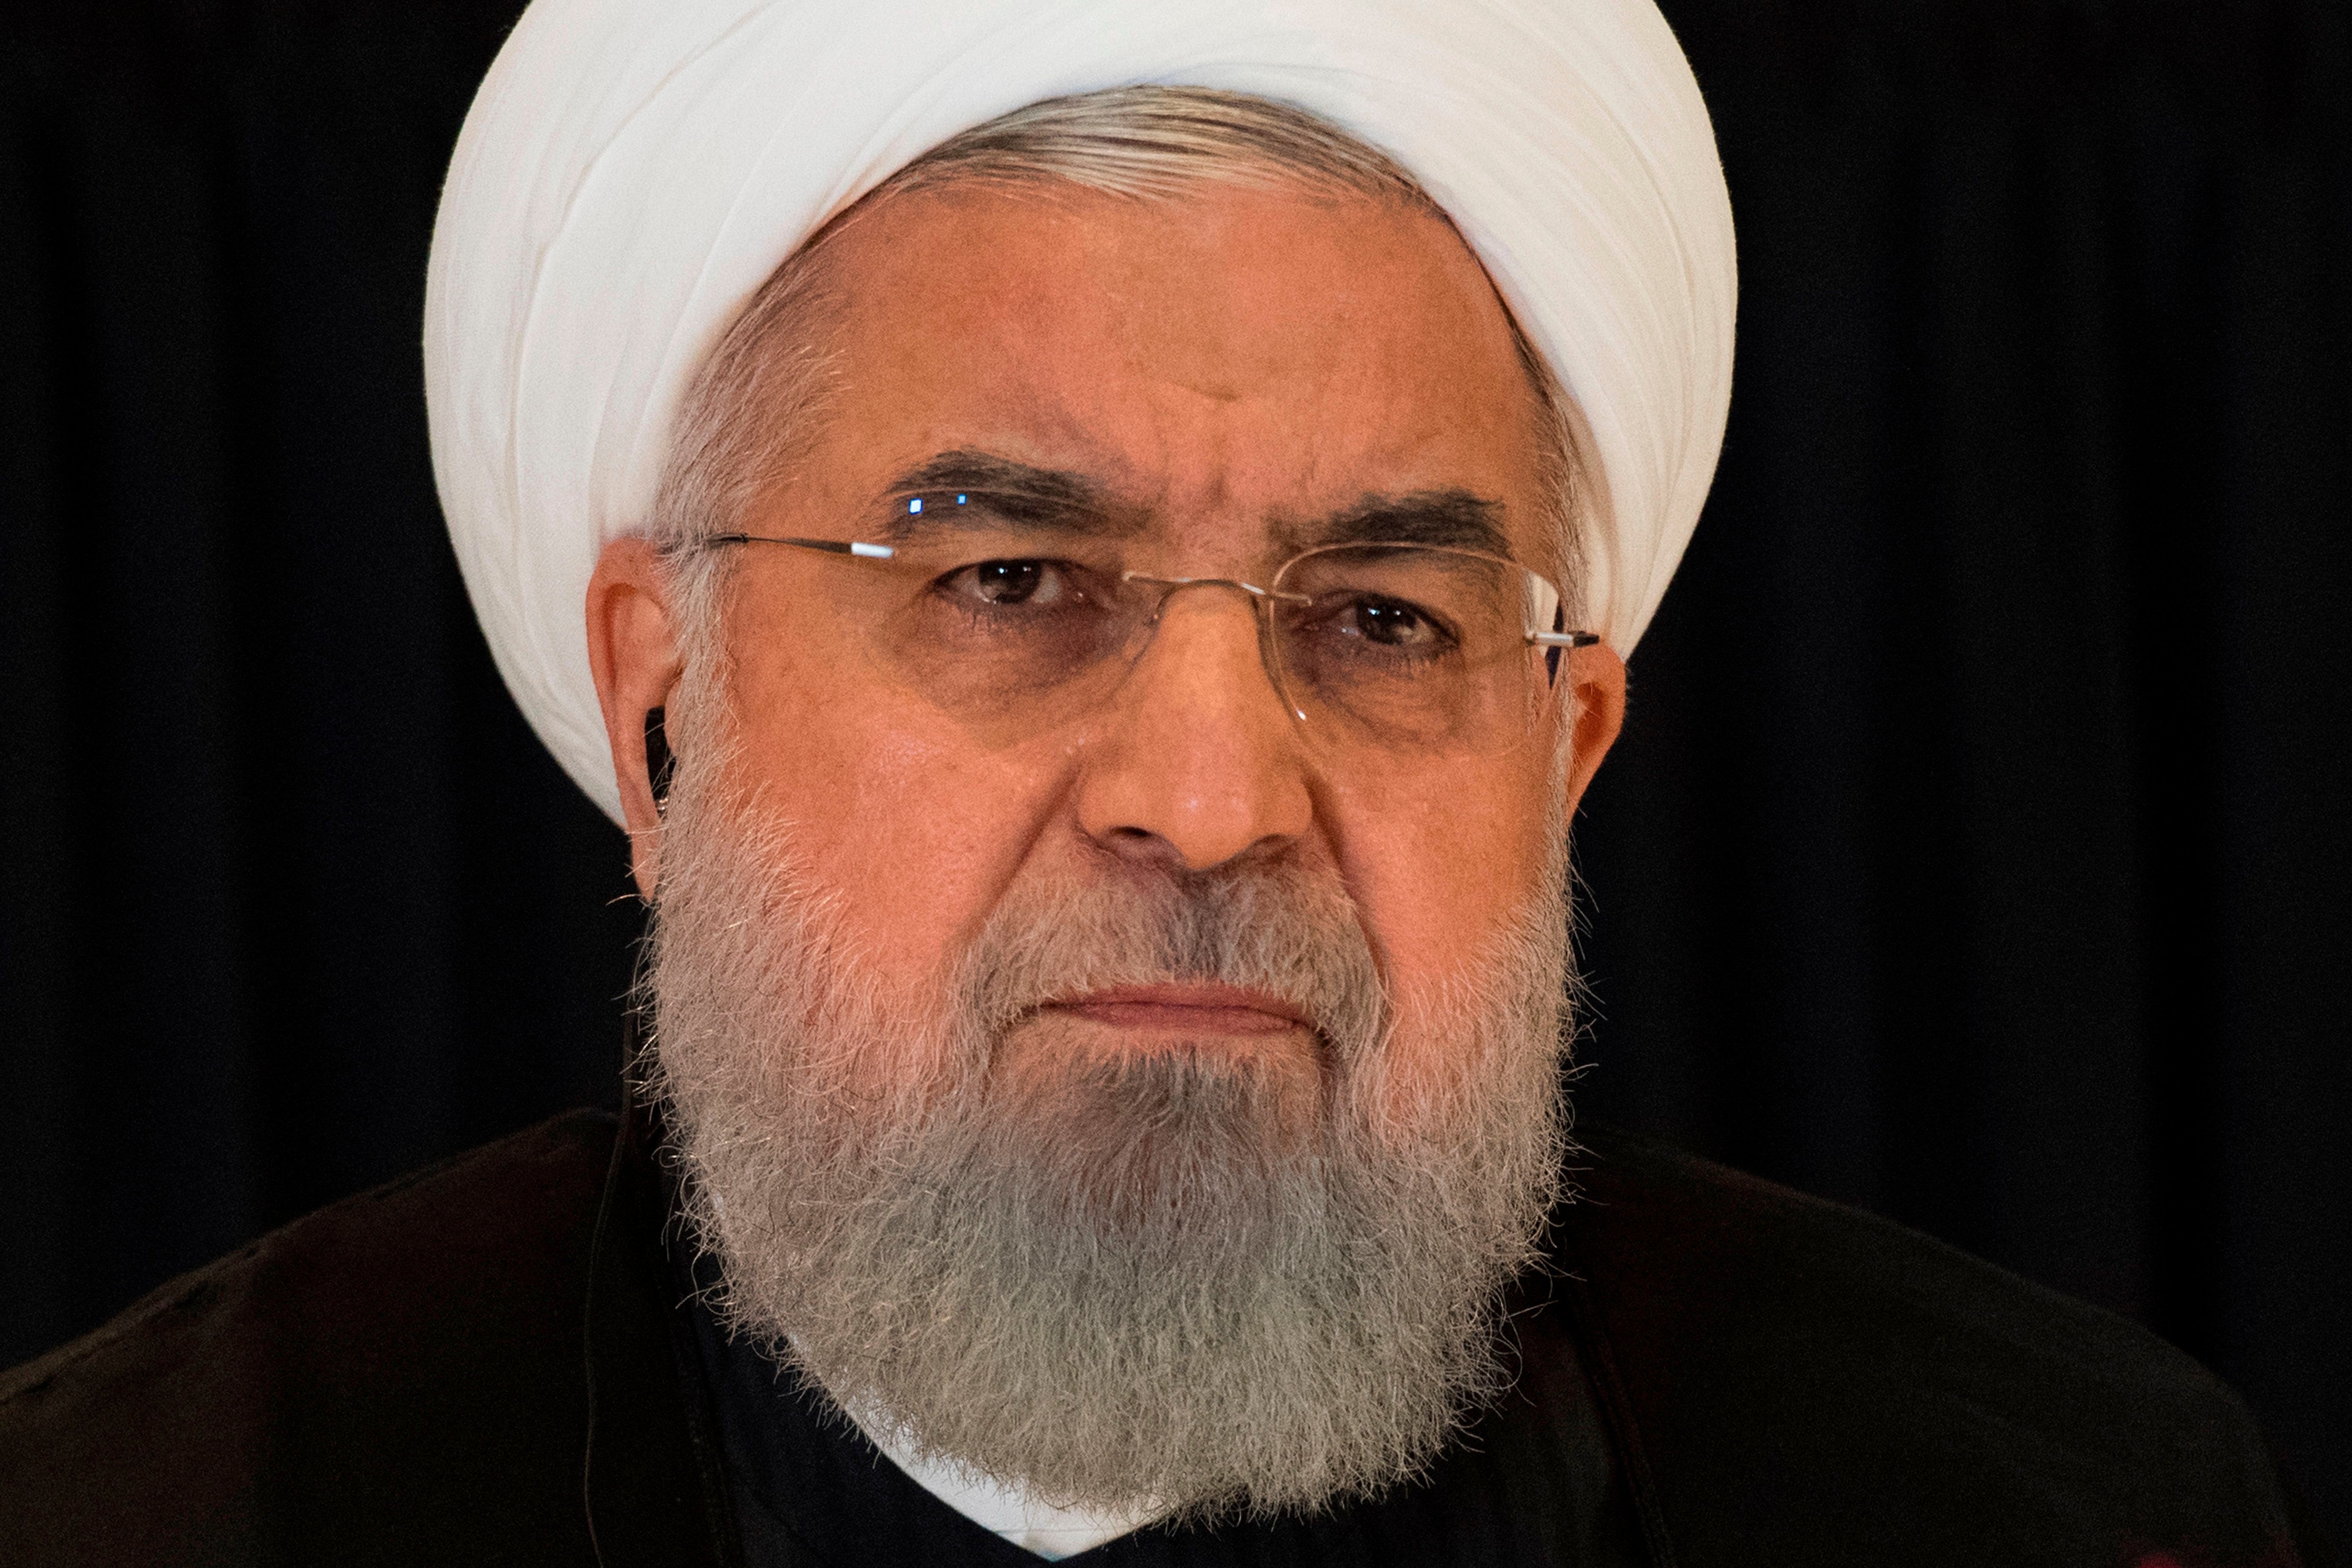 Hassan Rouhani, presidente de Irán